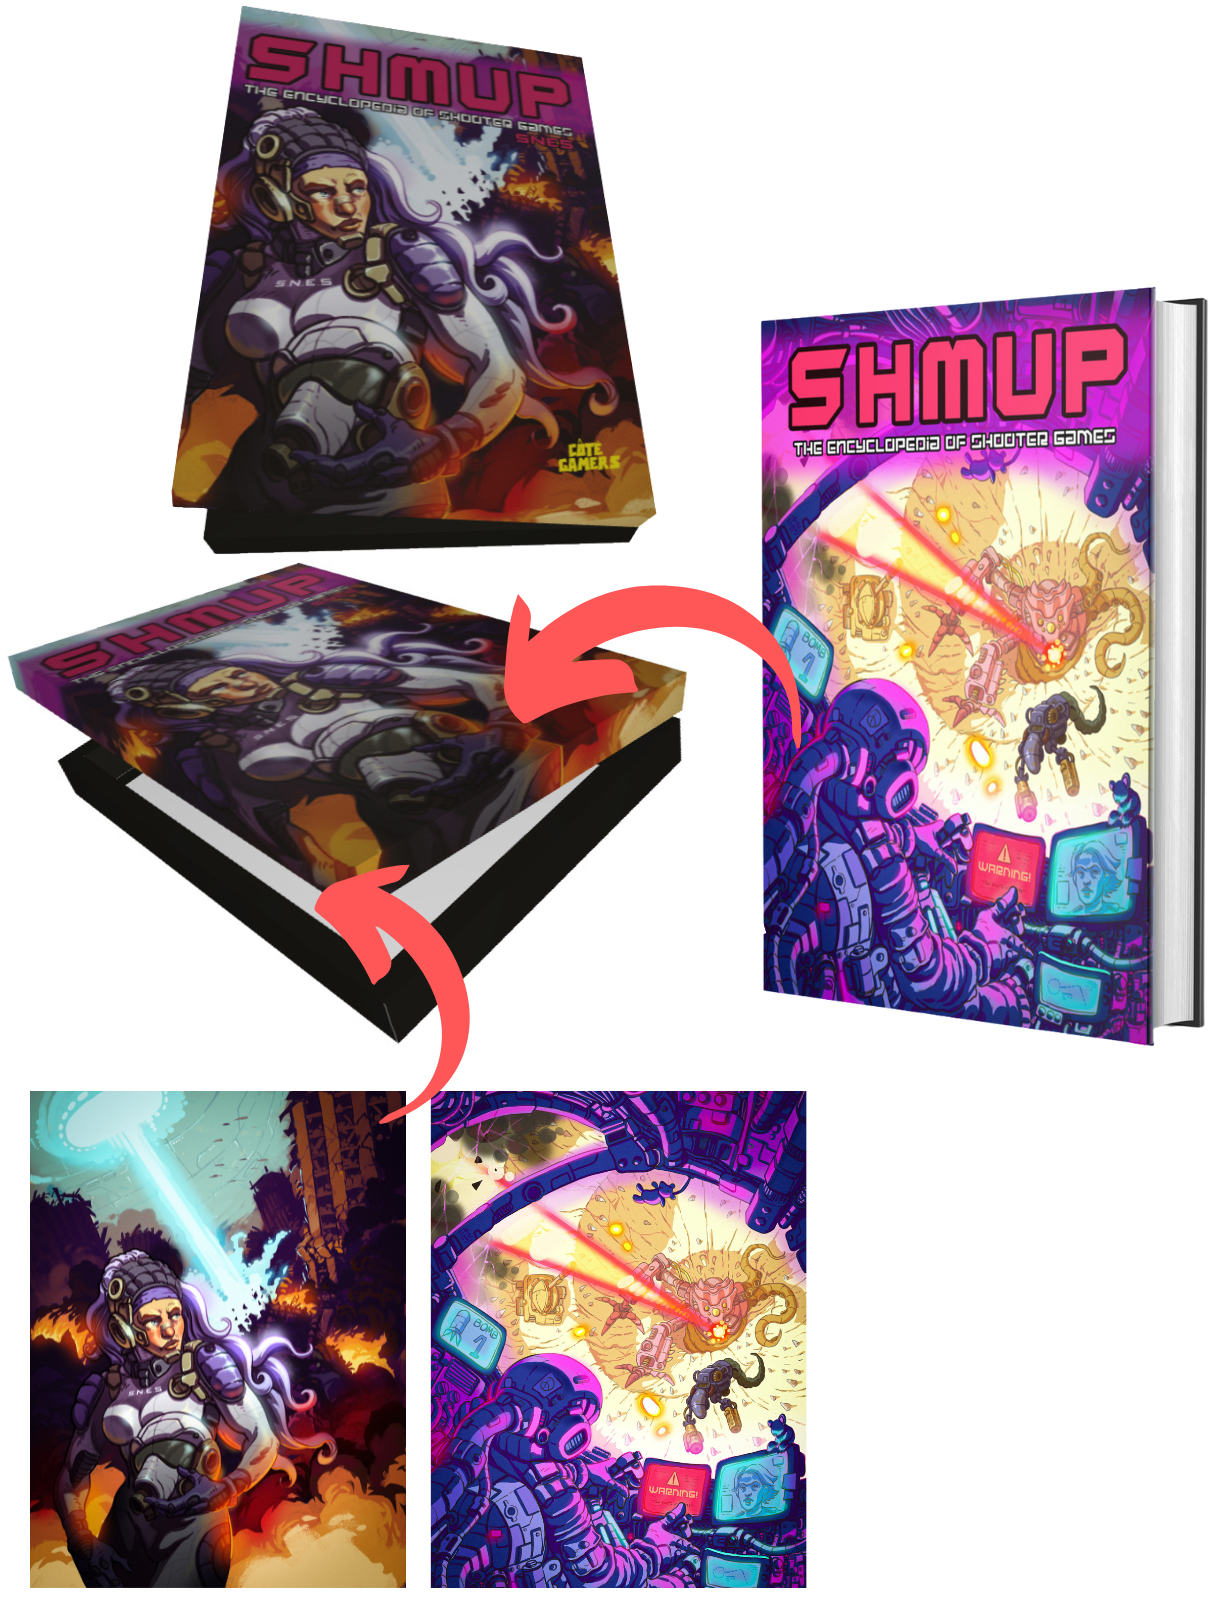 Shmup Deluxe Box contenu, illustrations